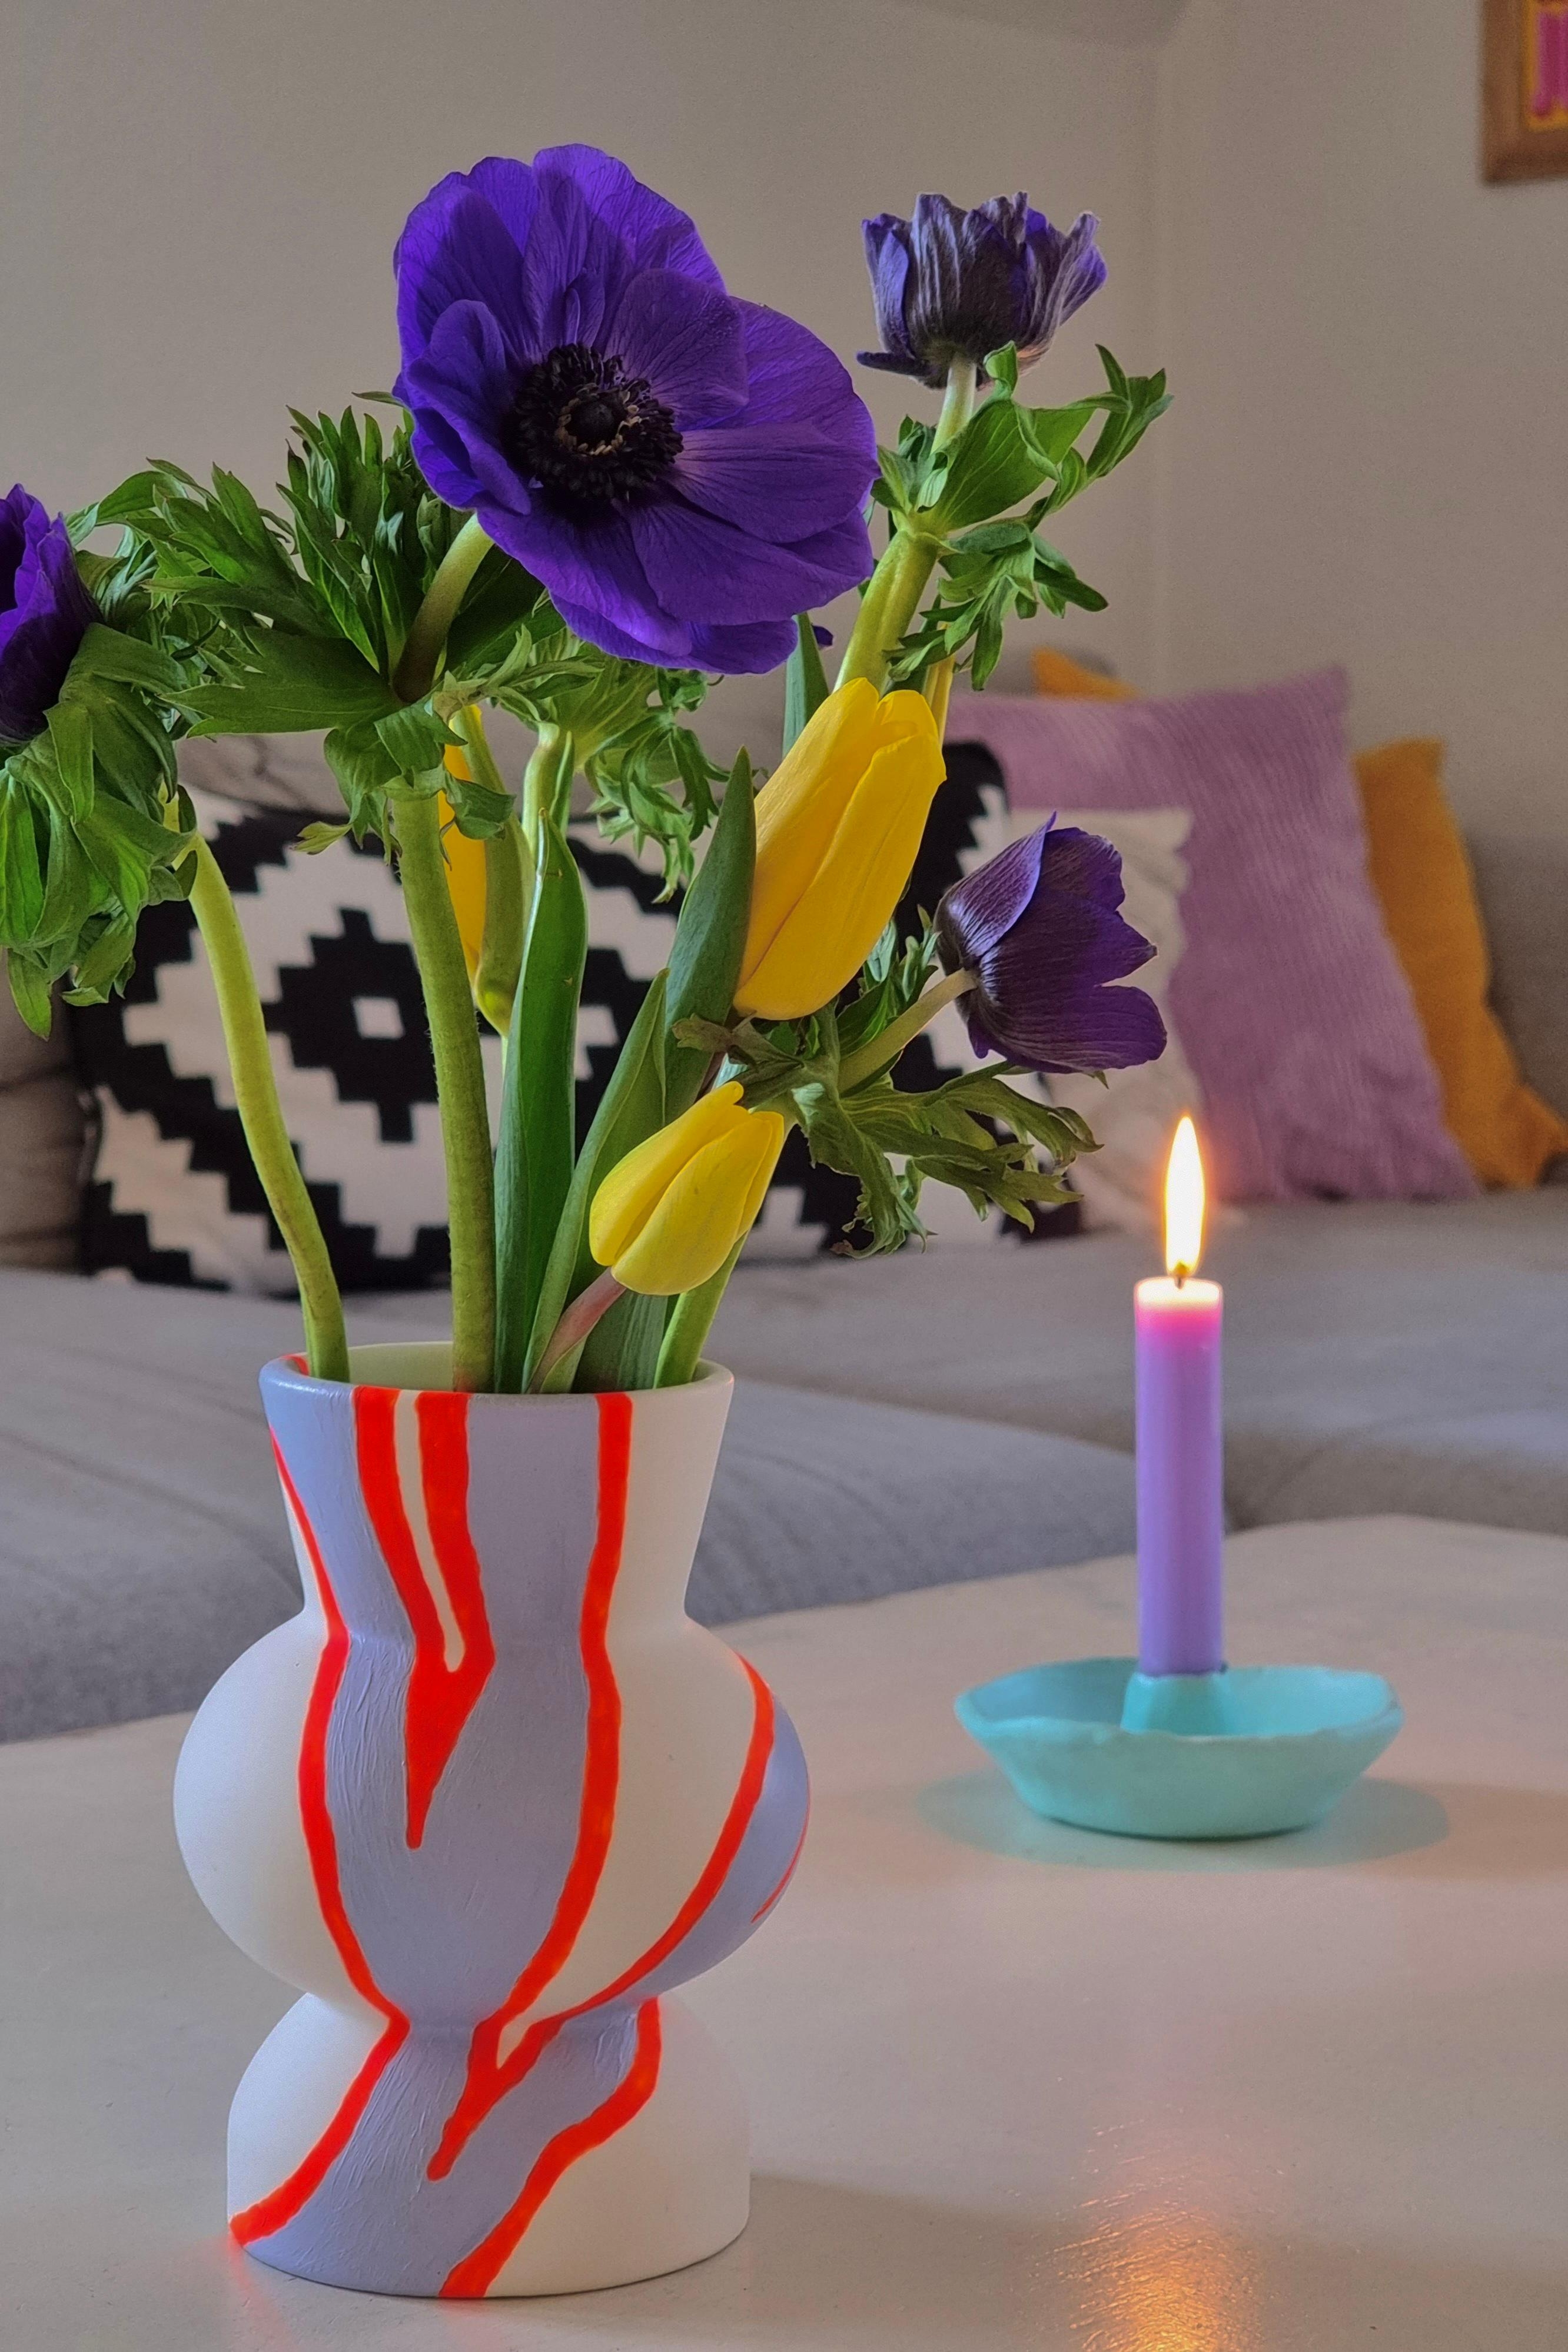 #happyvalentine 🩷 #Blumenliebe #Anemone trifft #Tulpen #Wohnzimmer #Diy #Vase und #Kerzenhalter #Kissen #colourful #Home 